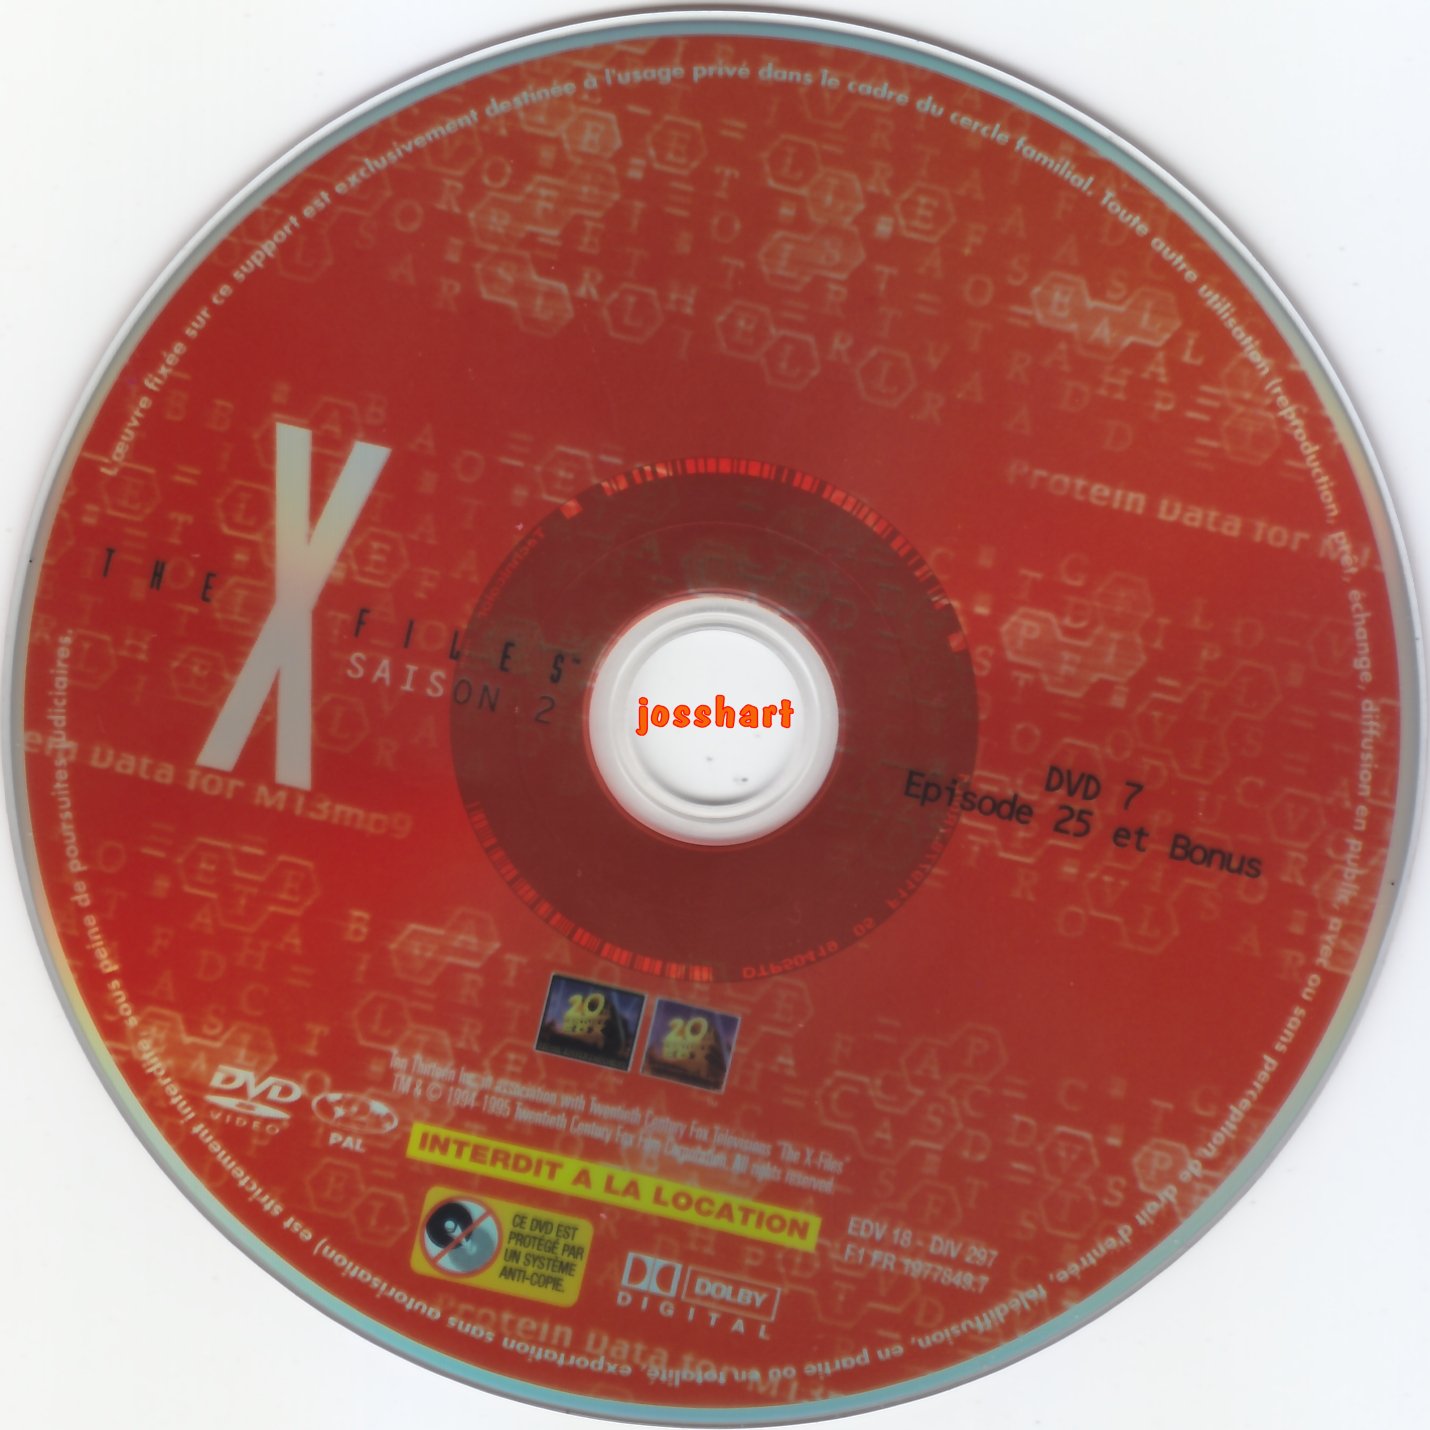 The X Files Saison 2 DVD 7 v2